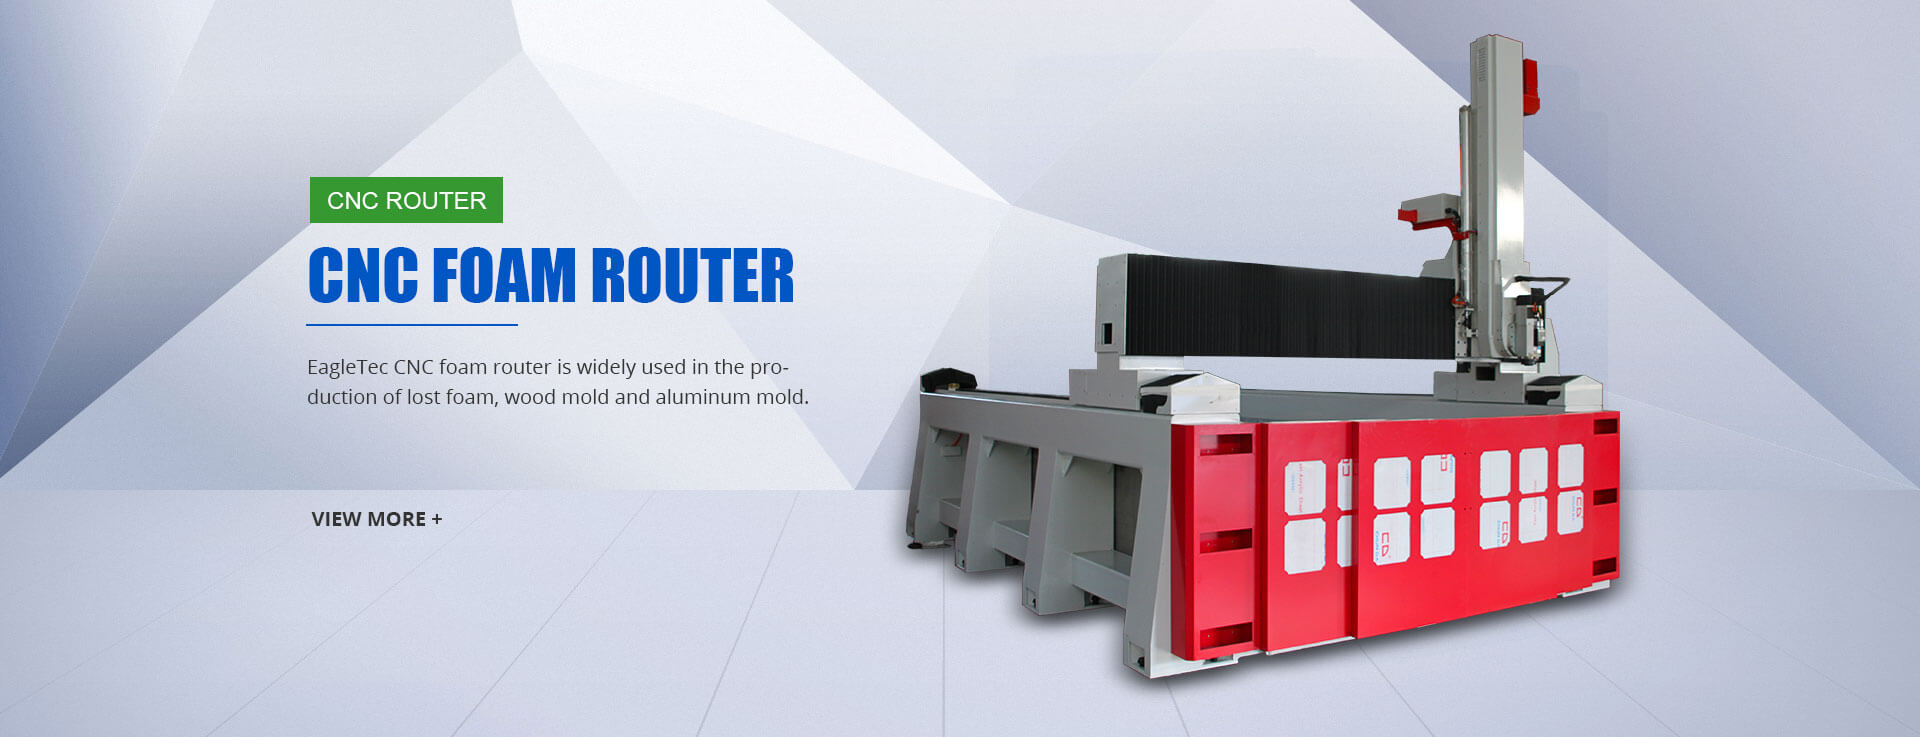 CNC Foam Router